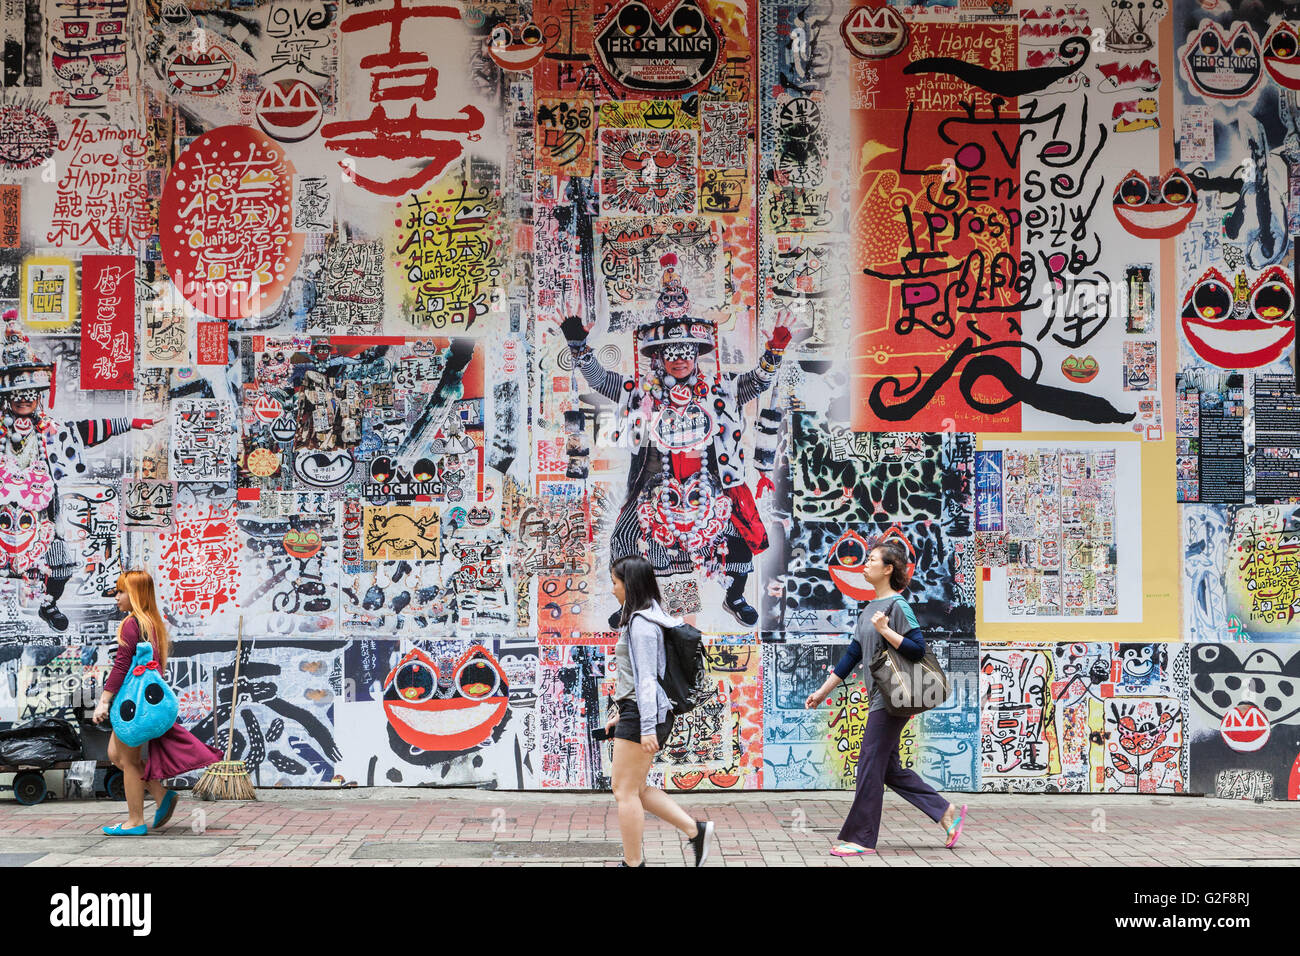 Hong Kong, grande murale, pubblica arte della calligrafia e immagini su una strada trafficata, un tipico paesaggio urbano, coperto di graffiti wall Foto Stock